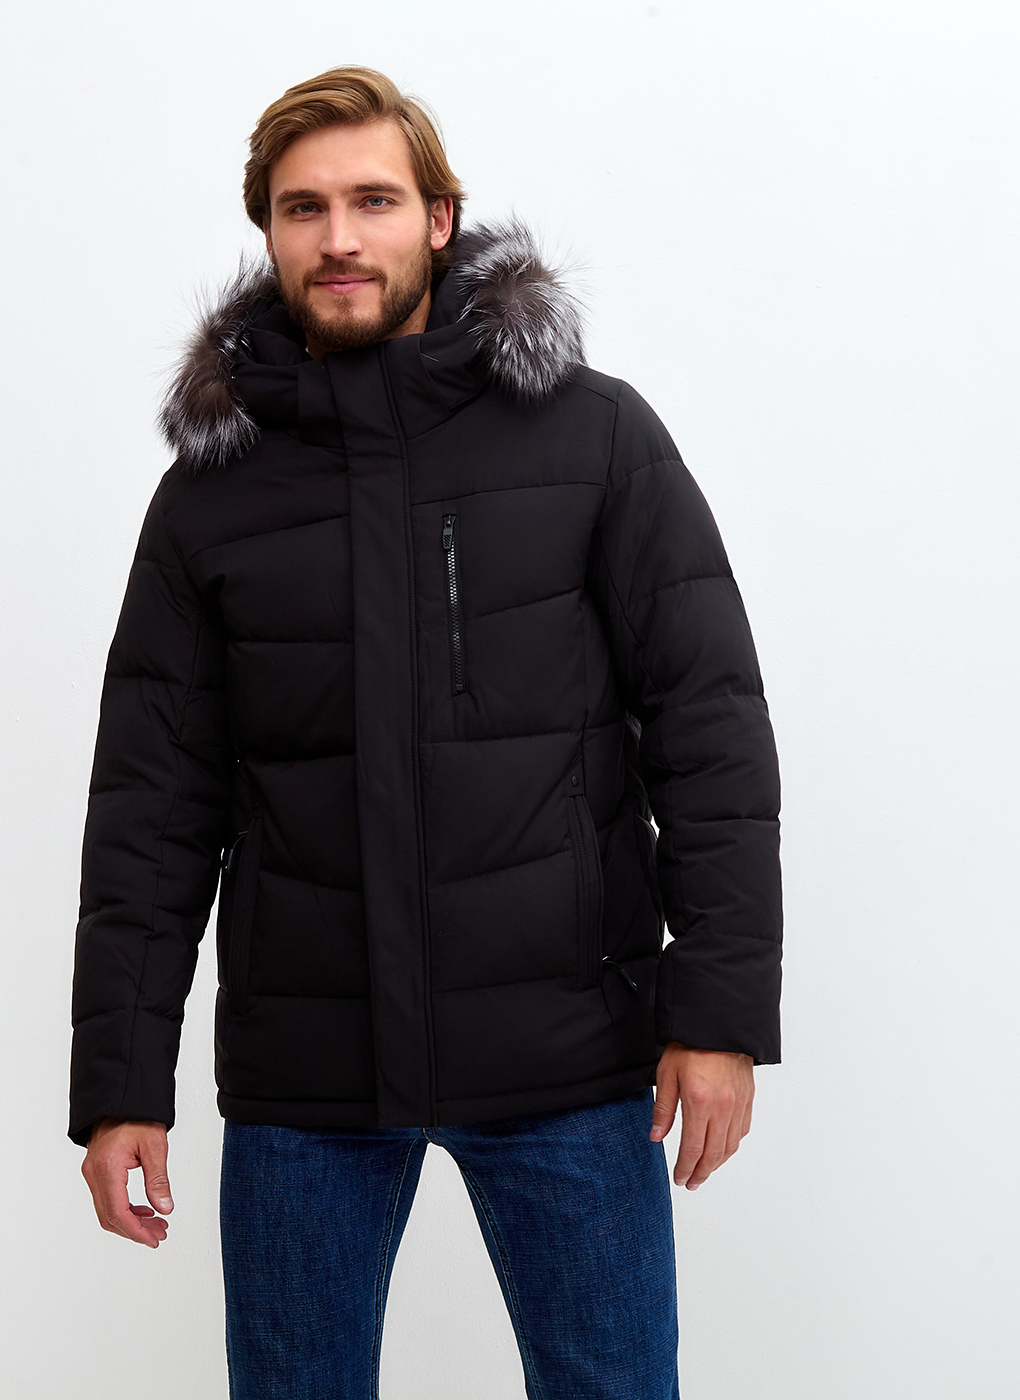 Зимняя куртка мужская Grizman 65173 черная 56 RU